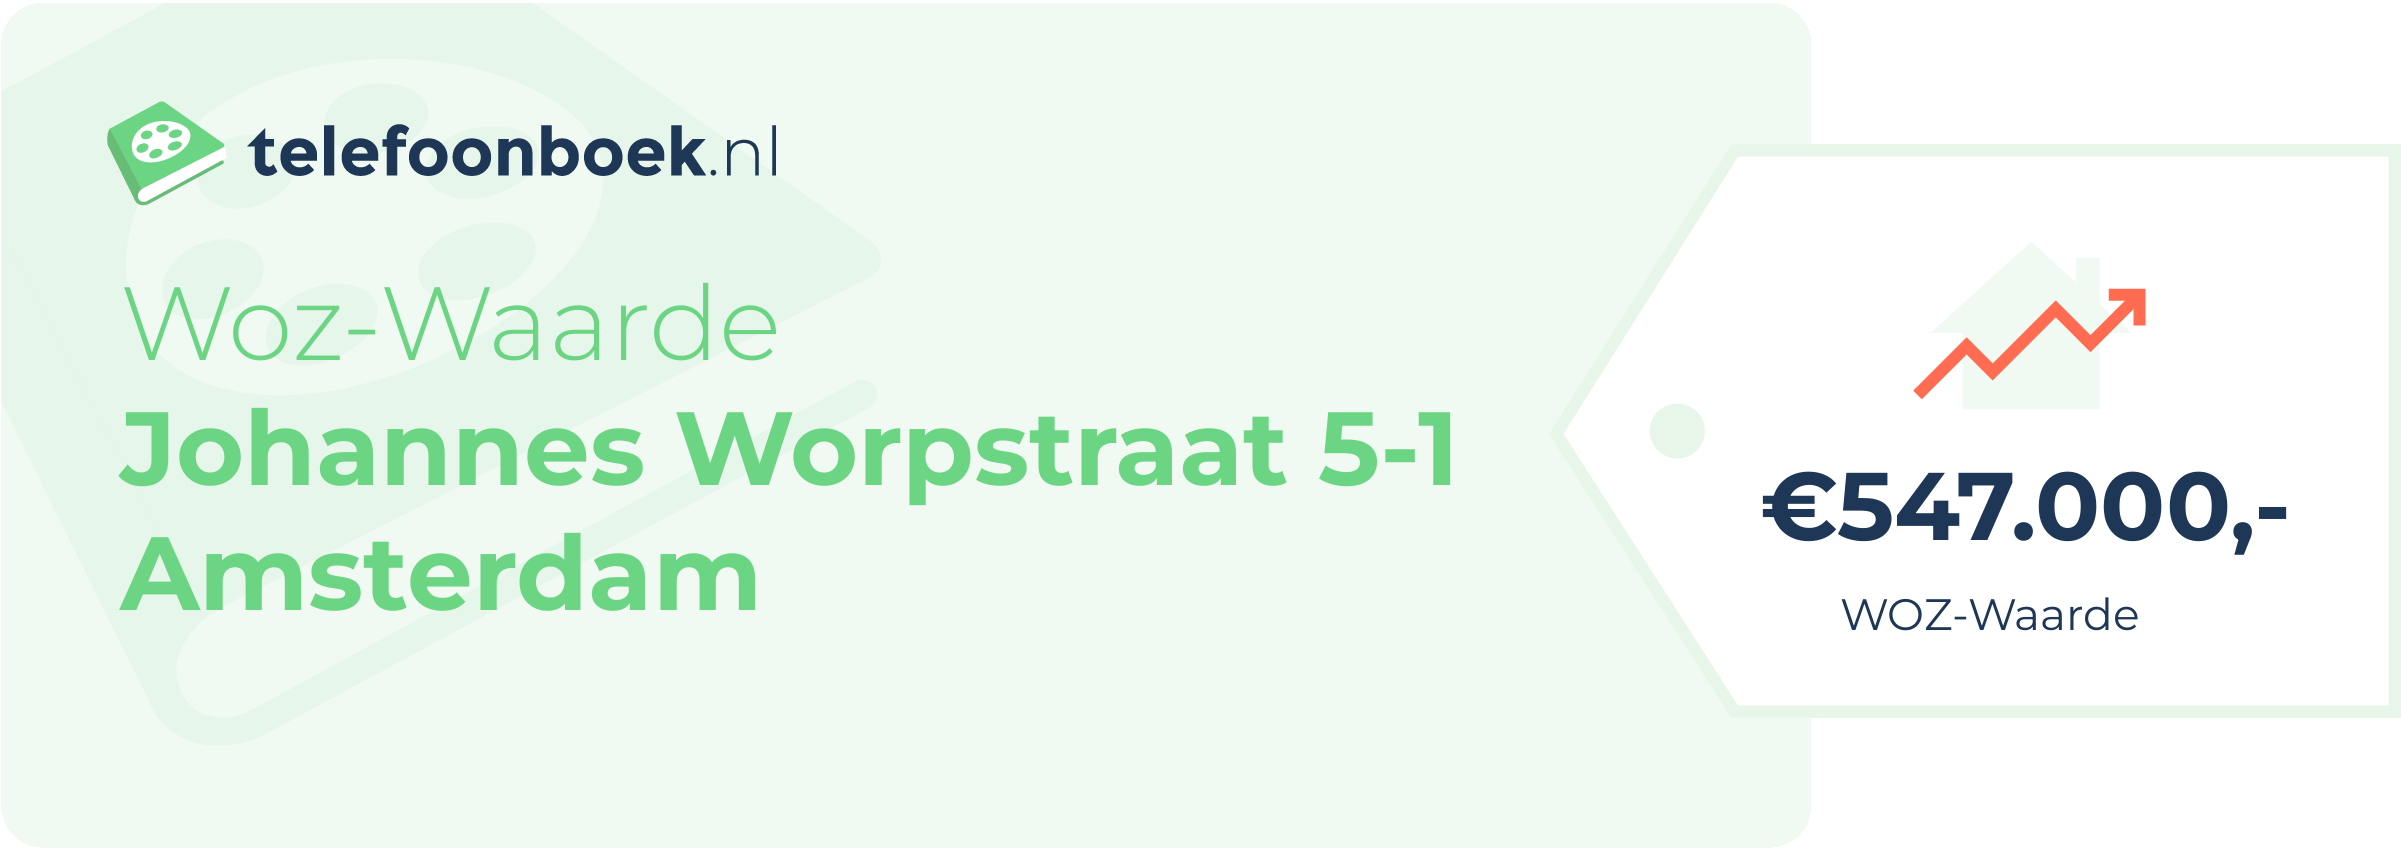 WOZ-waarde Johannes Worpstraat 5-1 Amsterdam